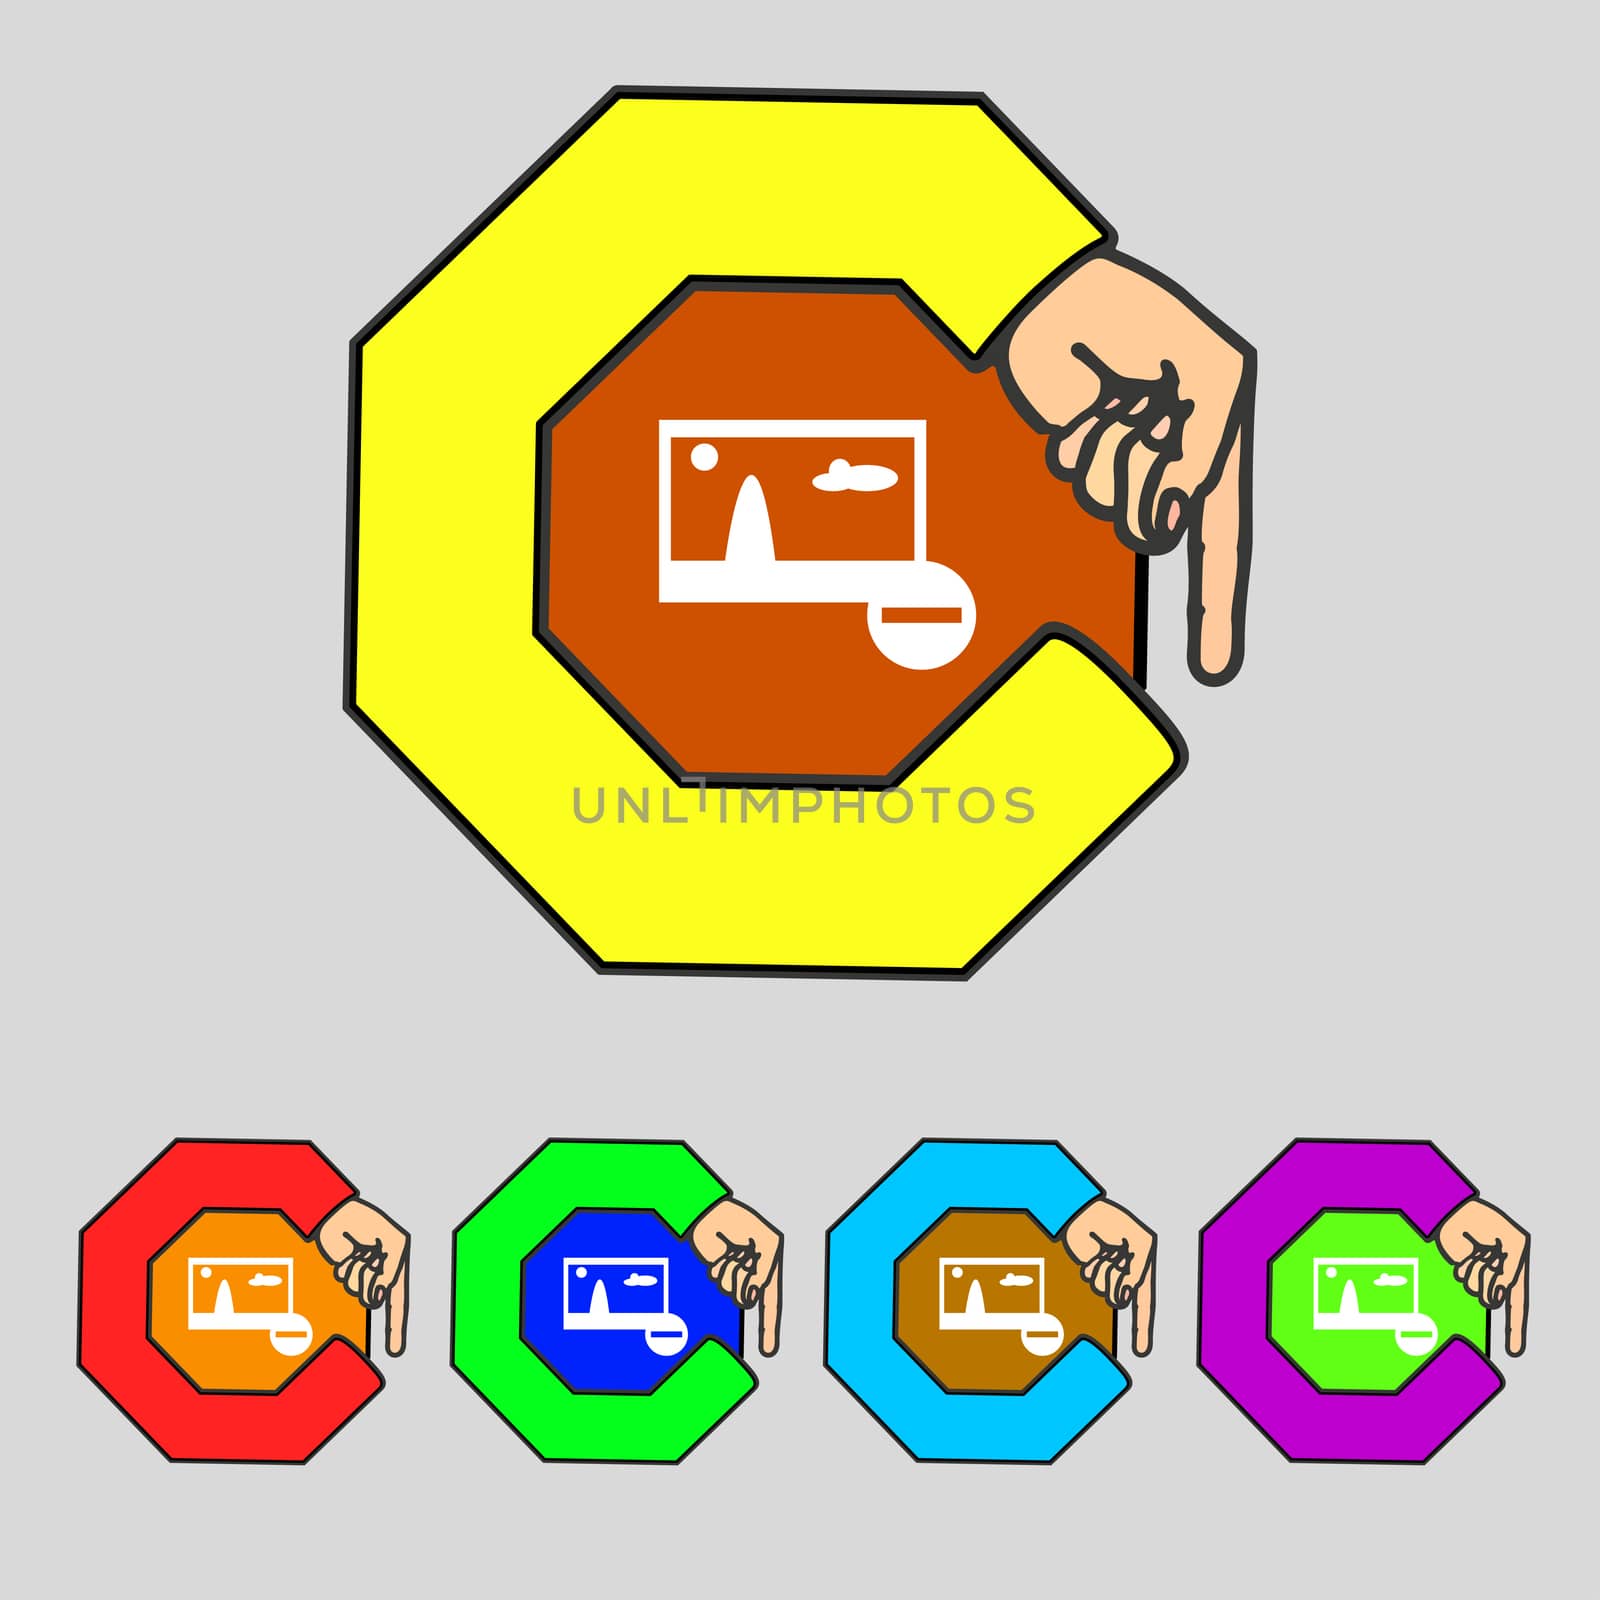 Minus File JPG sign icon. Download image file symbol. Set colourful buttons. Modern UI website navigation illustration